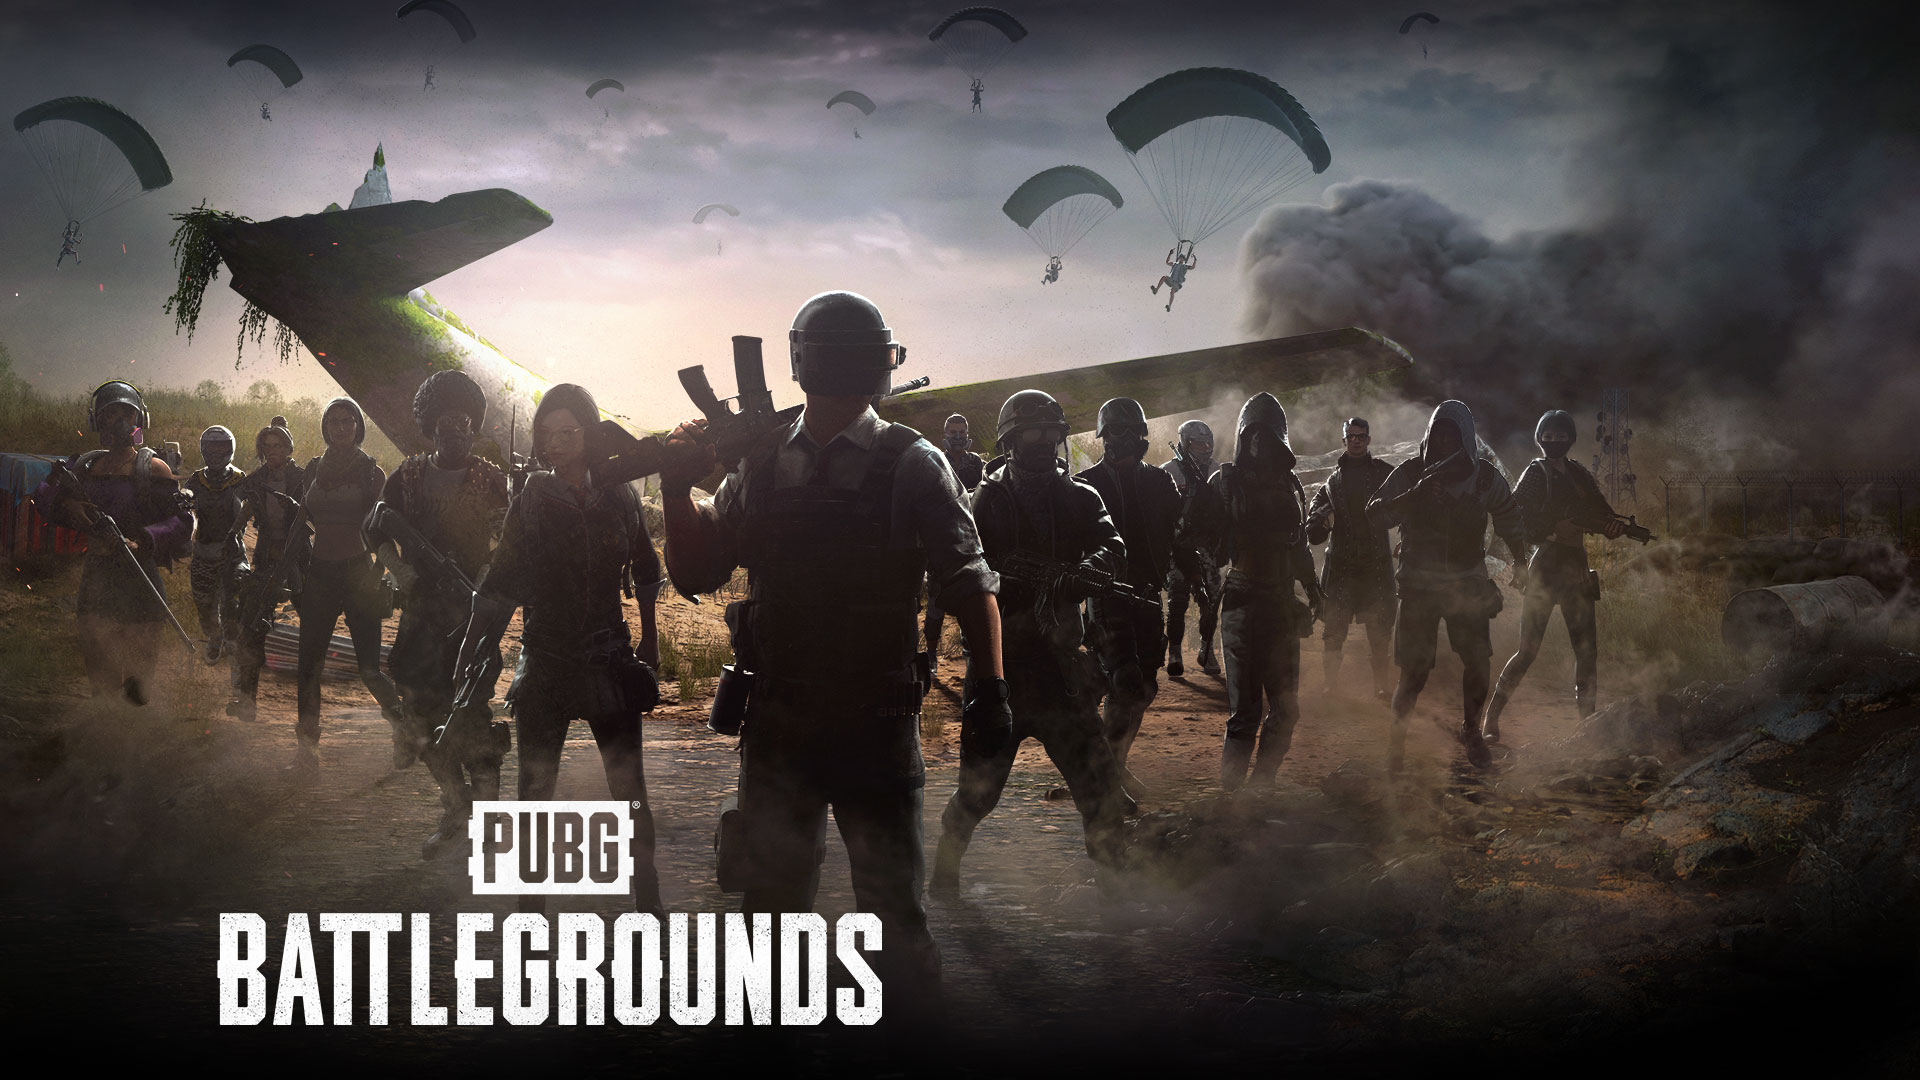 PUBG: Battlegrounds. Grupa graczy gromadzi się wokół rozbitego samolotu, podczas gdy inni spuszczają się na spadochronach.